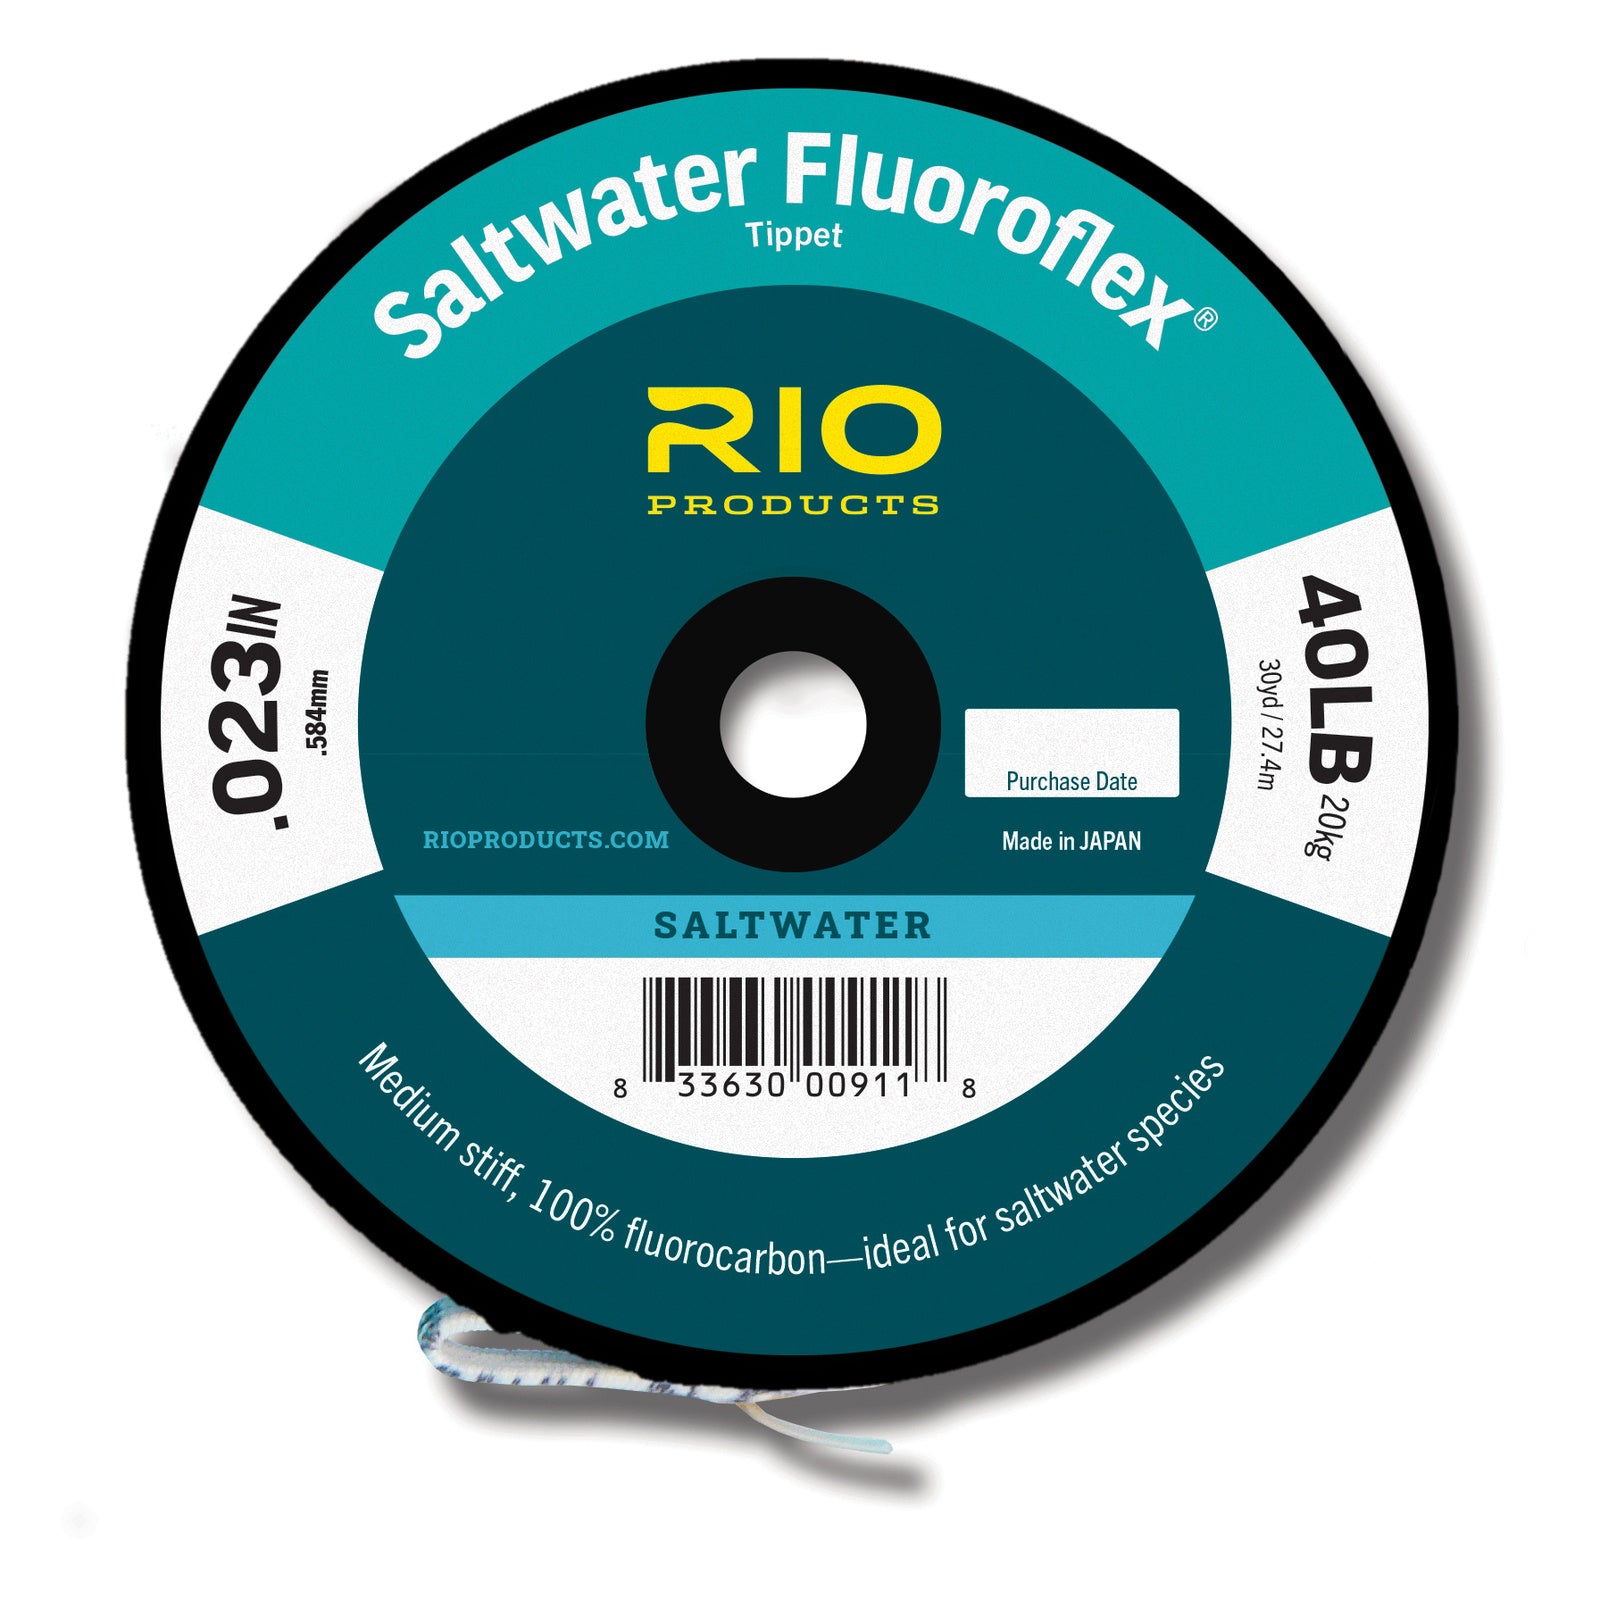 RIO Hard Mono Saltwater Tippet, Buy Saltwater Hard Mono Online At